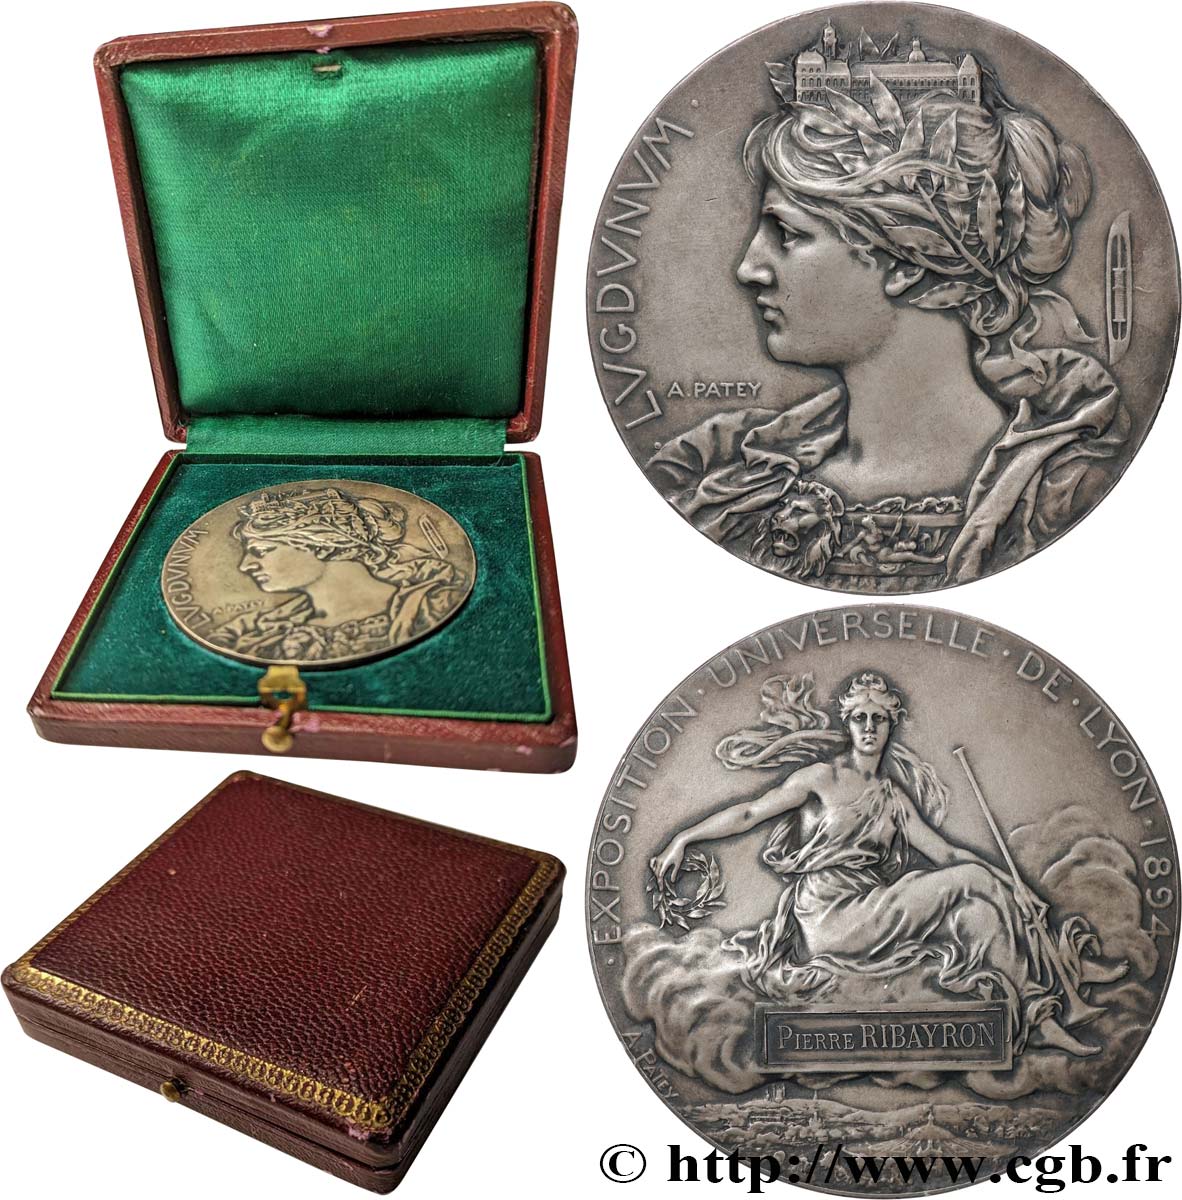 LYON AND THE LYONNAIS AREA (JETONS AND MEDALS OF...) Médaille de récompense, Lugdunum AU